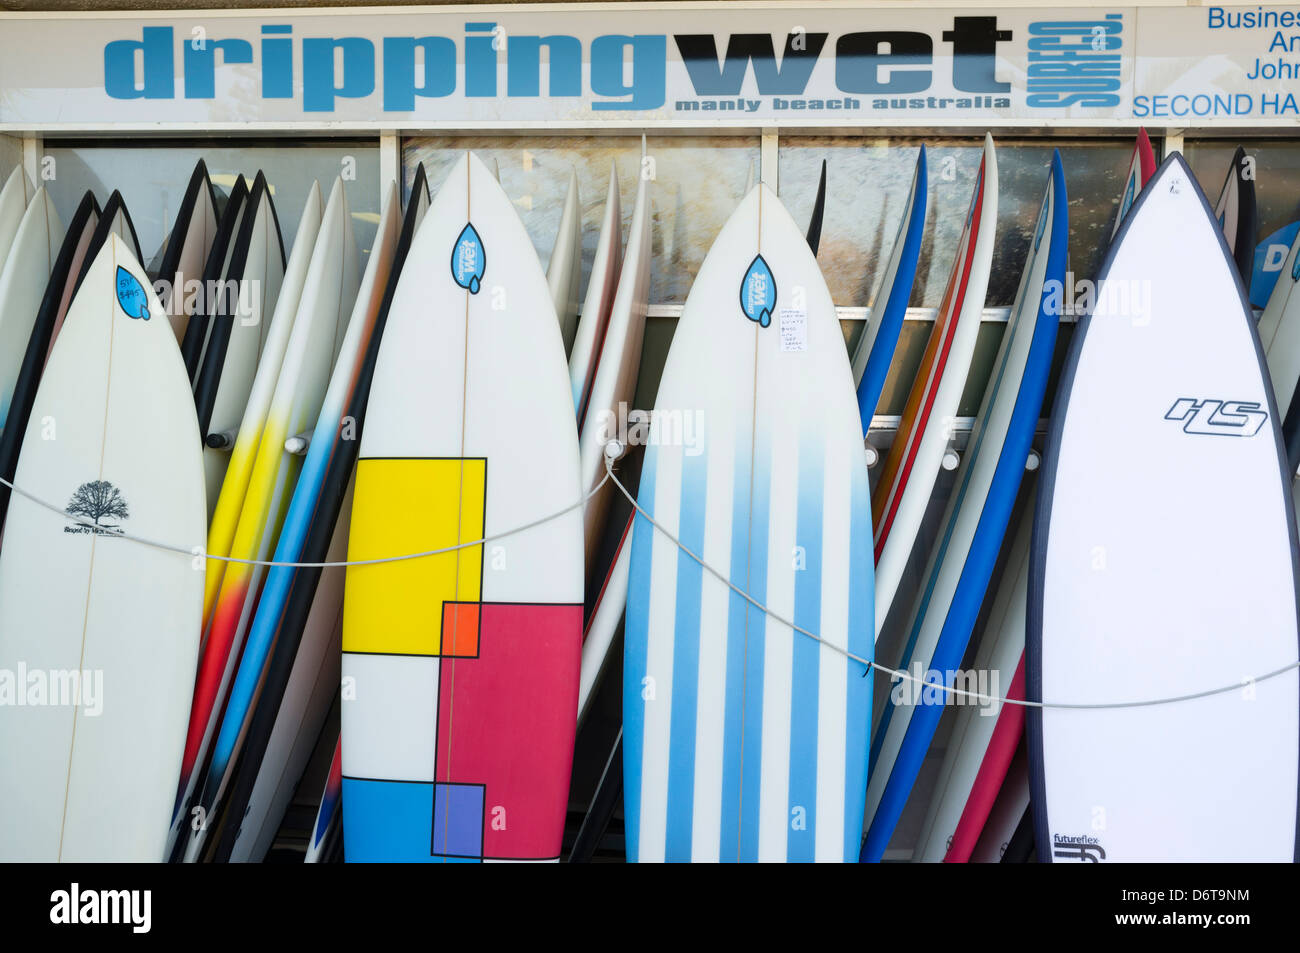 Planches de surf shop pour la vente dans la région de plage de Manly en Australie Banque D'Images